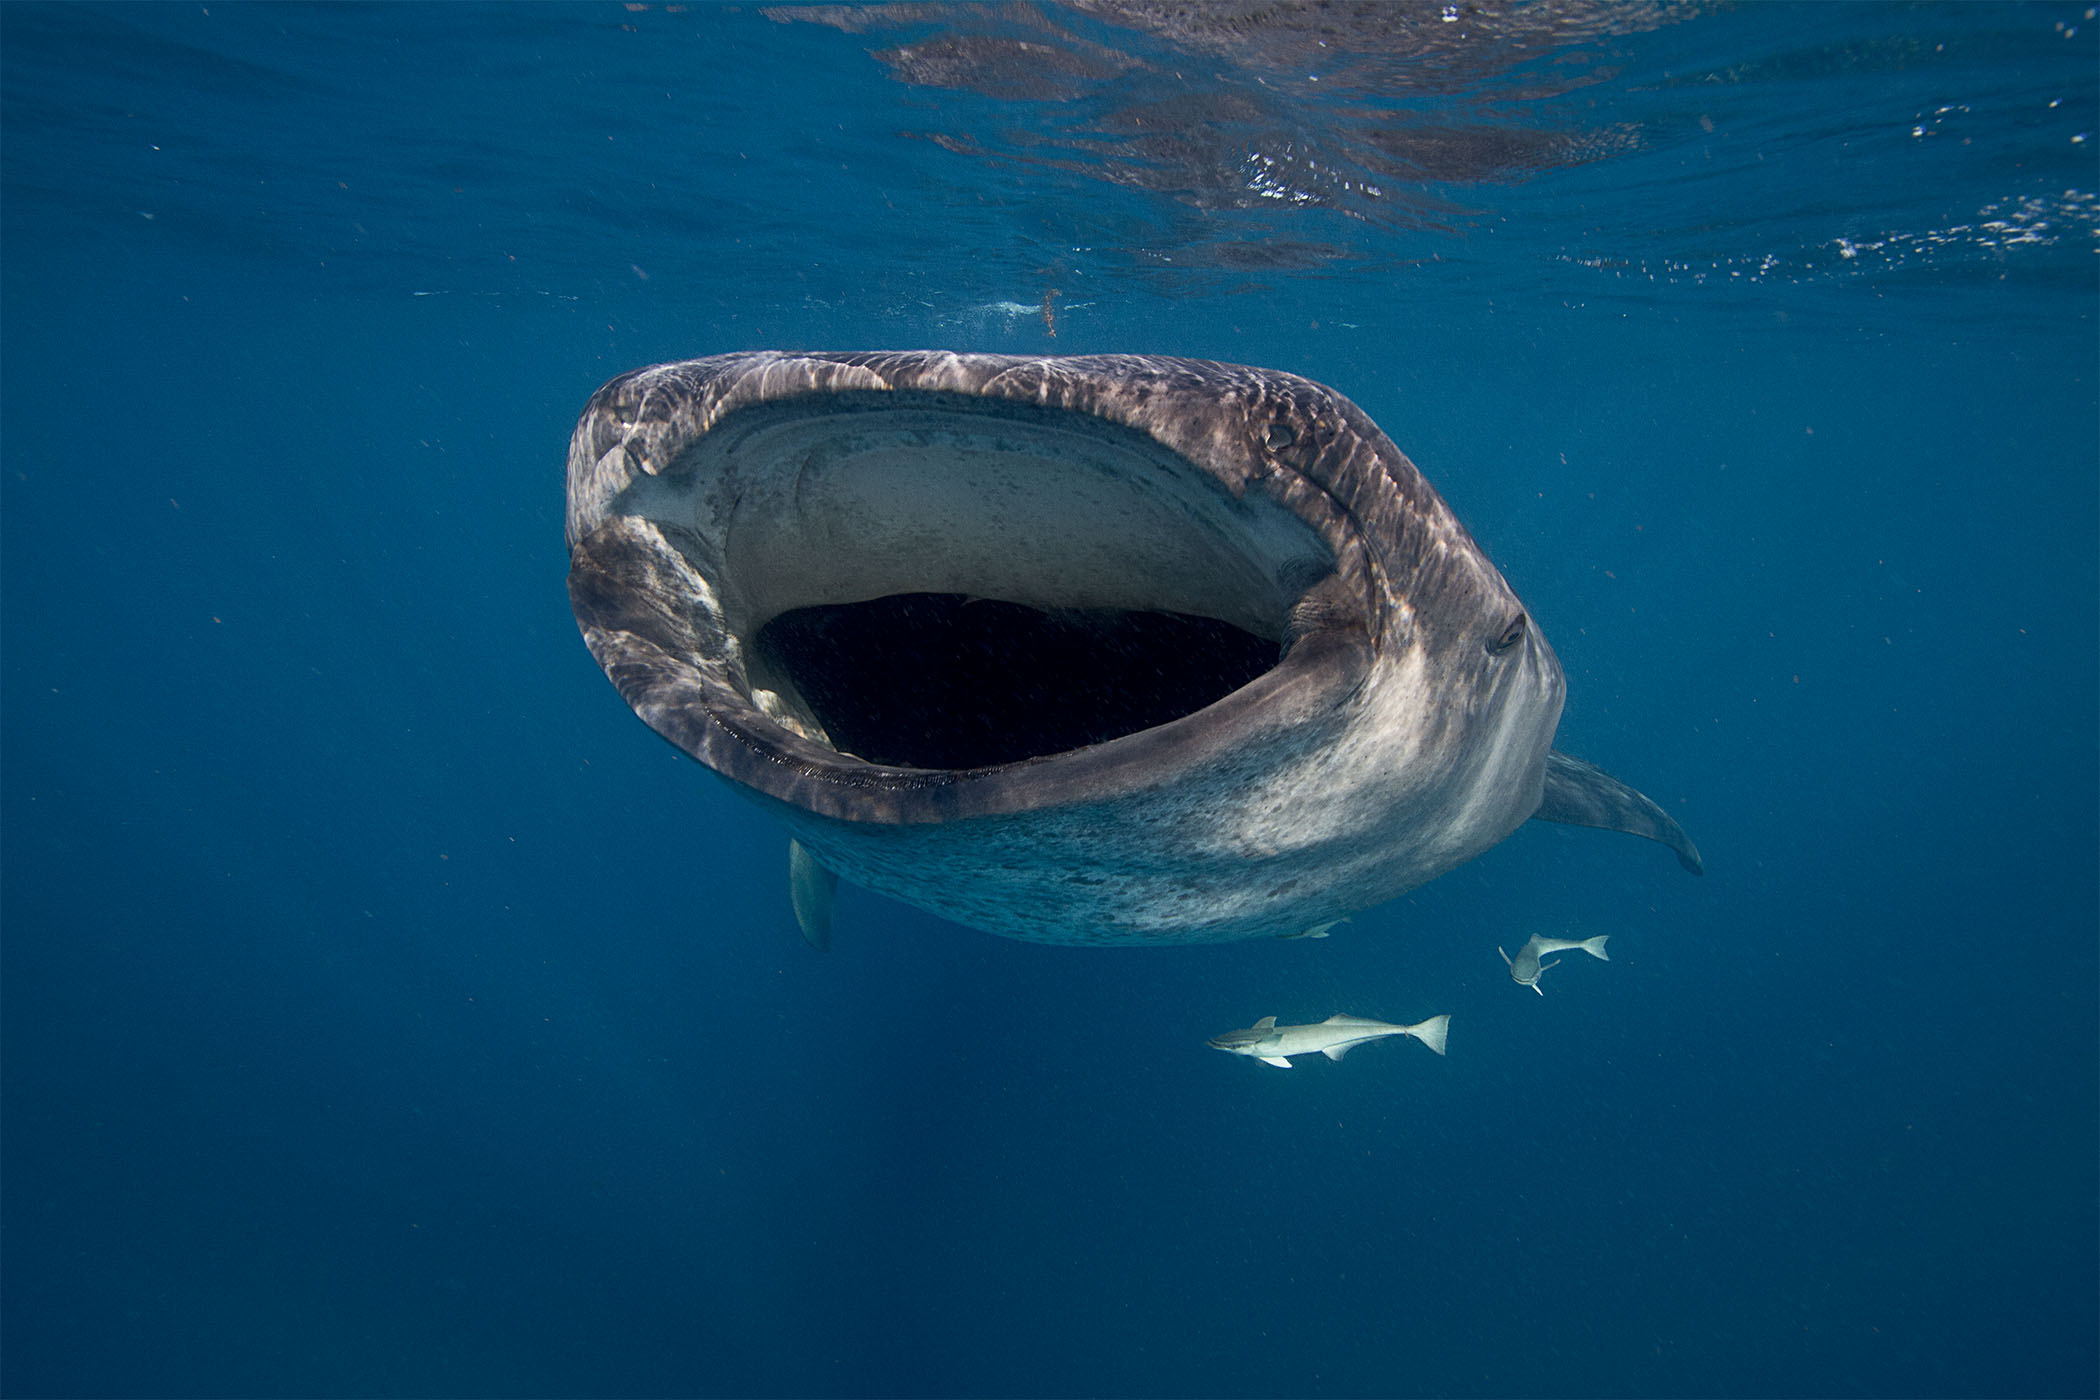 Oris Aquis GMT Date Whale Shark 2